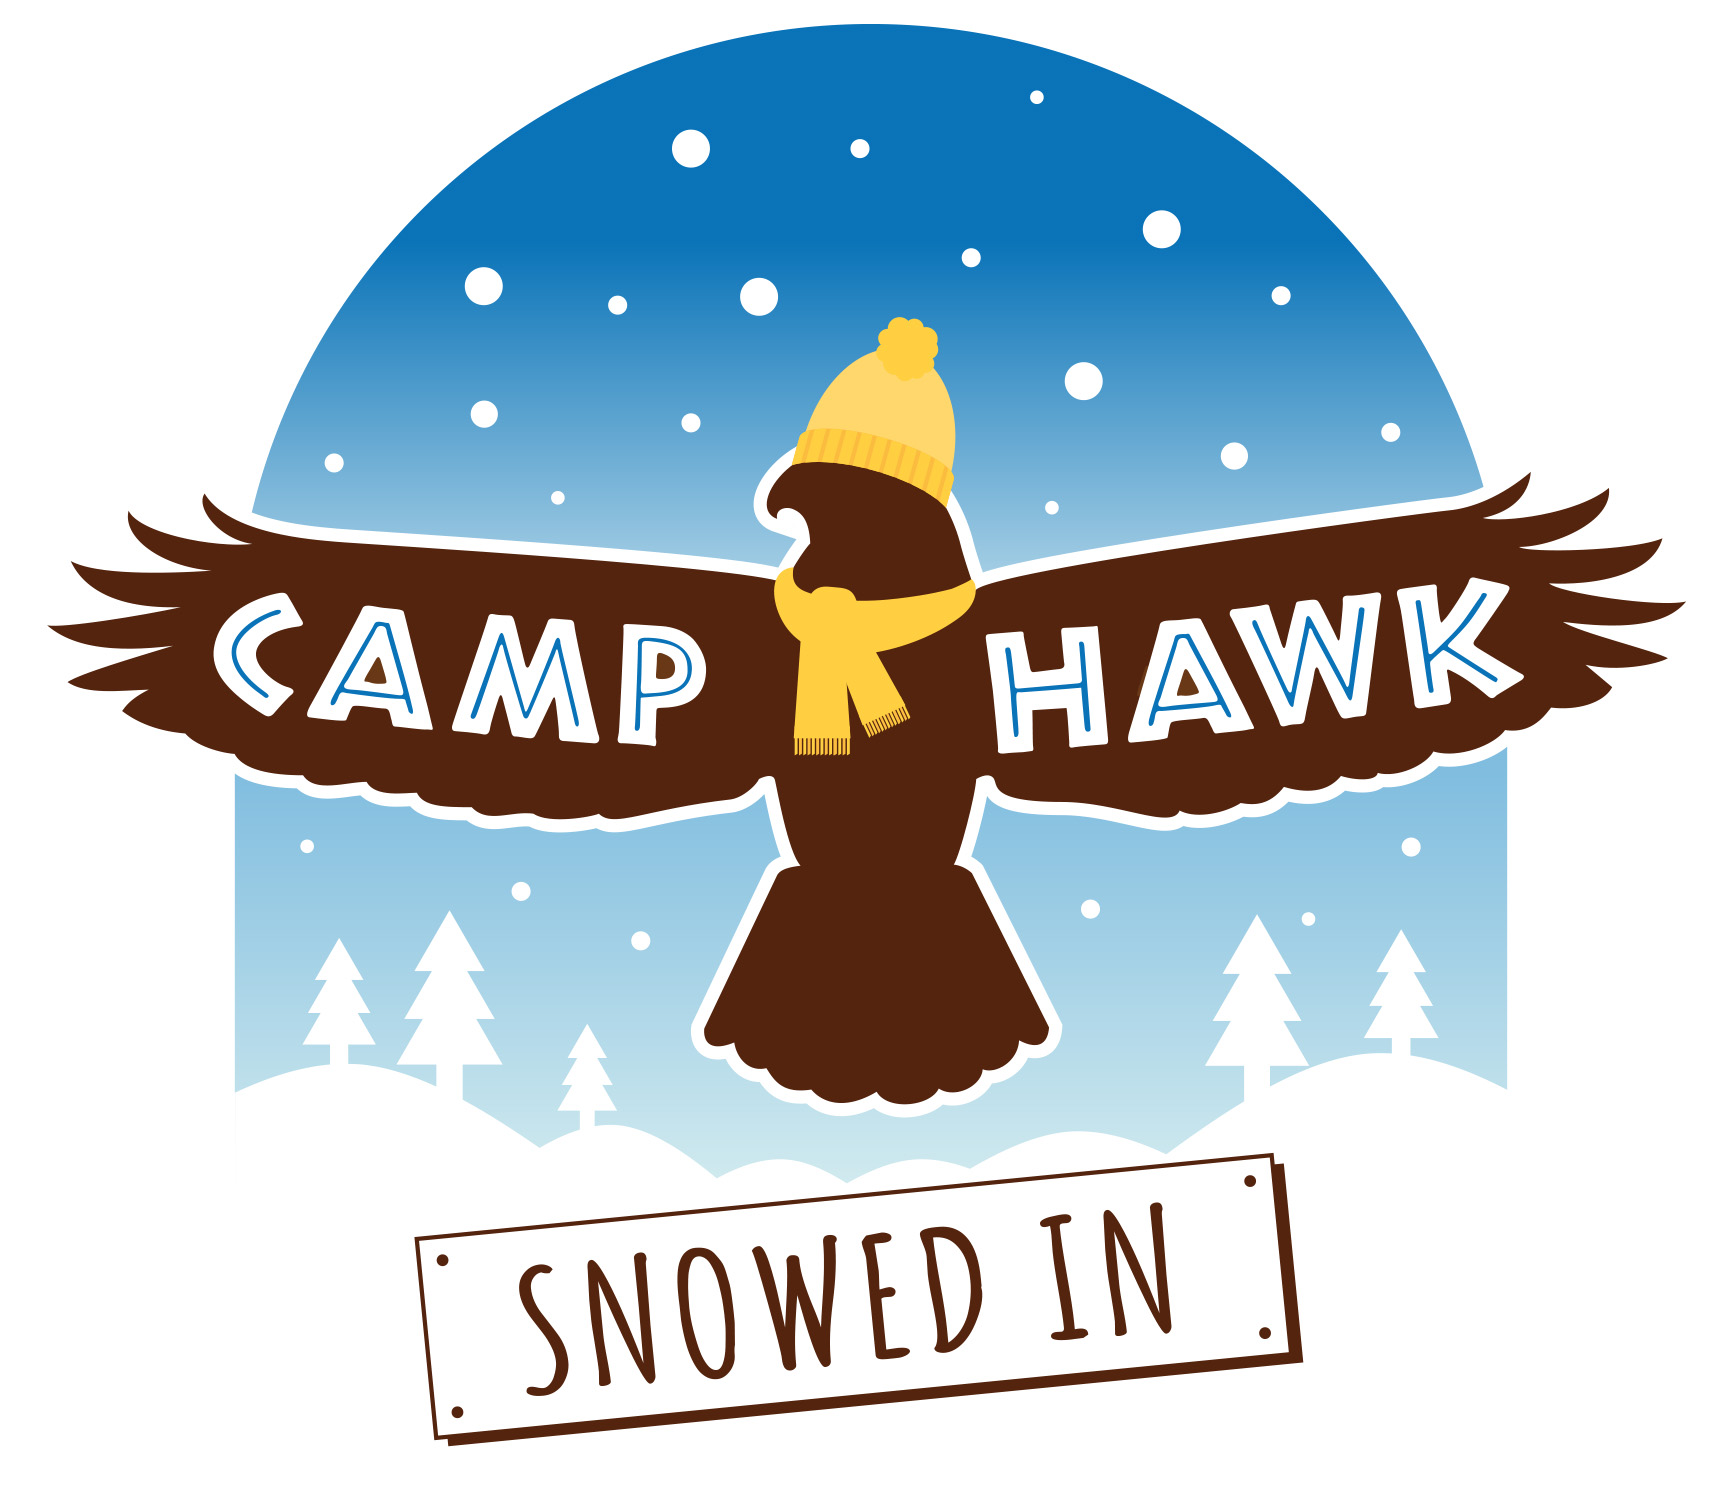 camp hawk snowed in logo